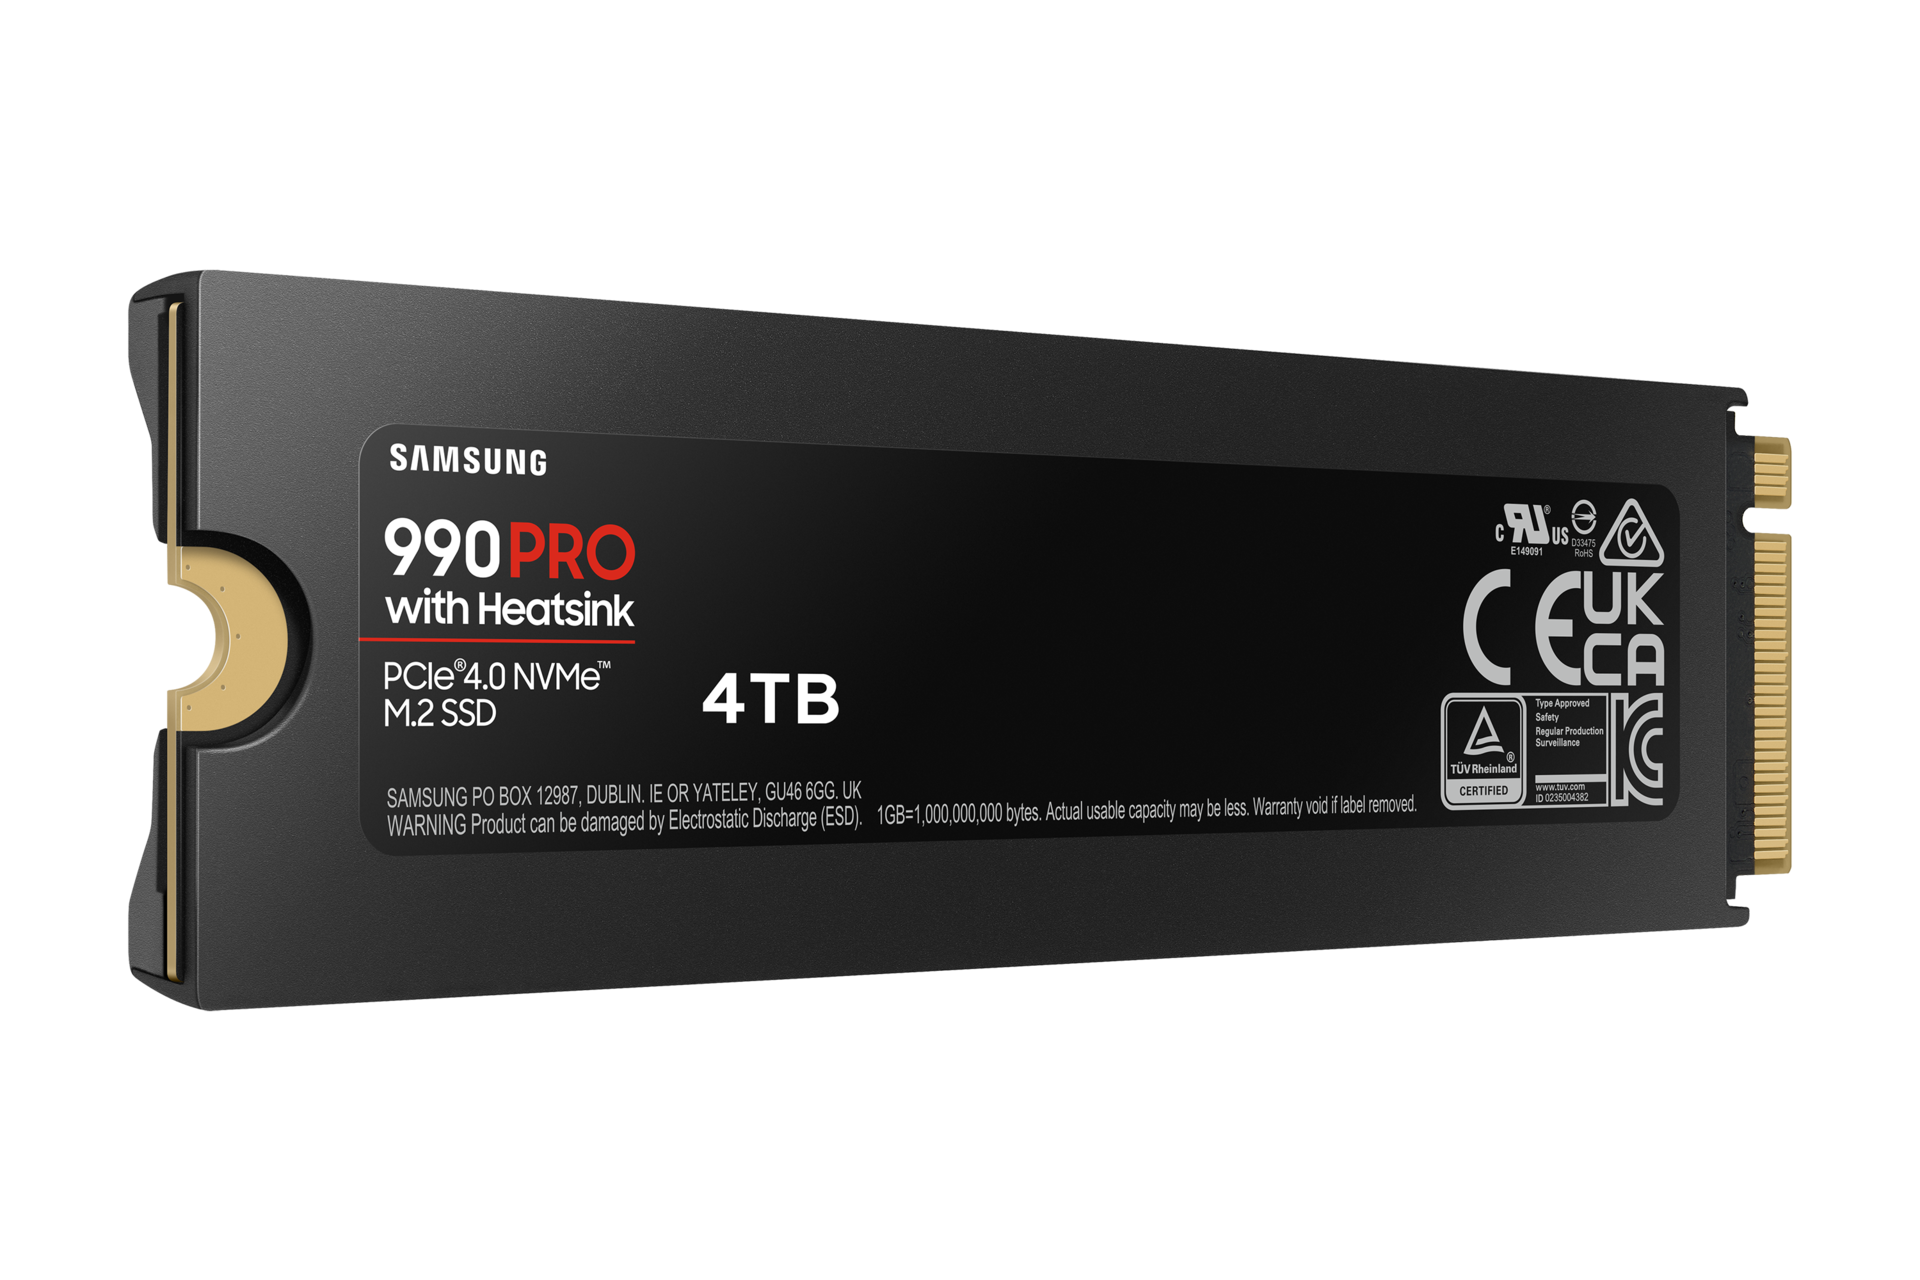 내장 SSD 990 PRO NVMe with Heatsink 4 TB (블랙) 오른쪽으로 20도 돌아간 뒷면 이미지